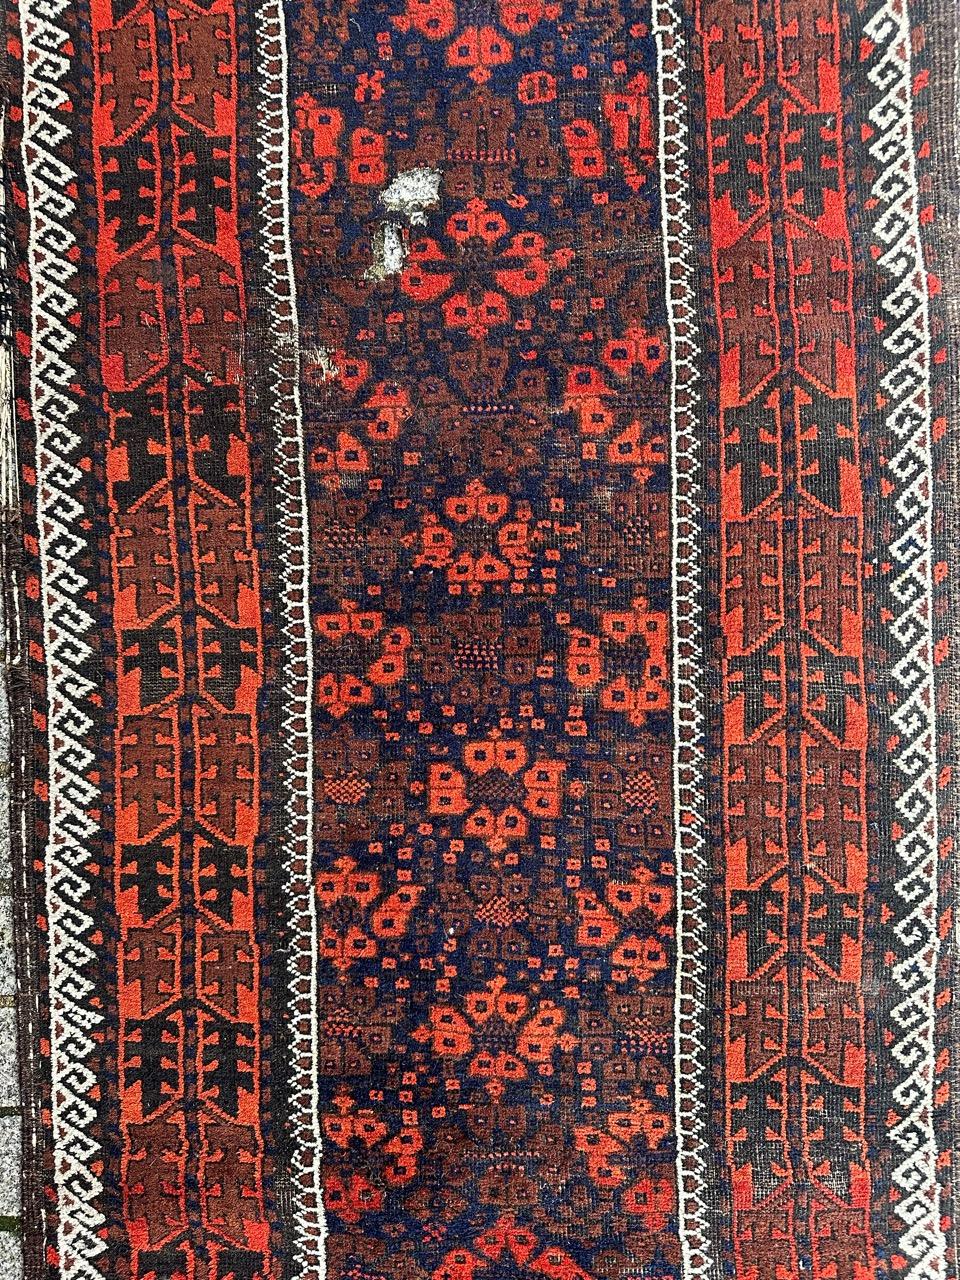 Schöner antiker turkmenischer Belutsch-Teppich aus Afghanistan, mit schönem Stammes- und geometrischem Muster und schönen natürlichen Farben in Marineblau, Orange, Braun, Dunkelbraun und Weiß, komplett handgeknüpft mit Wolle auf